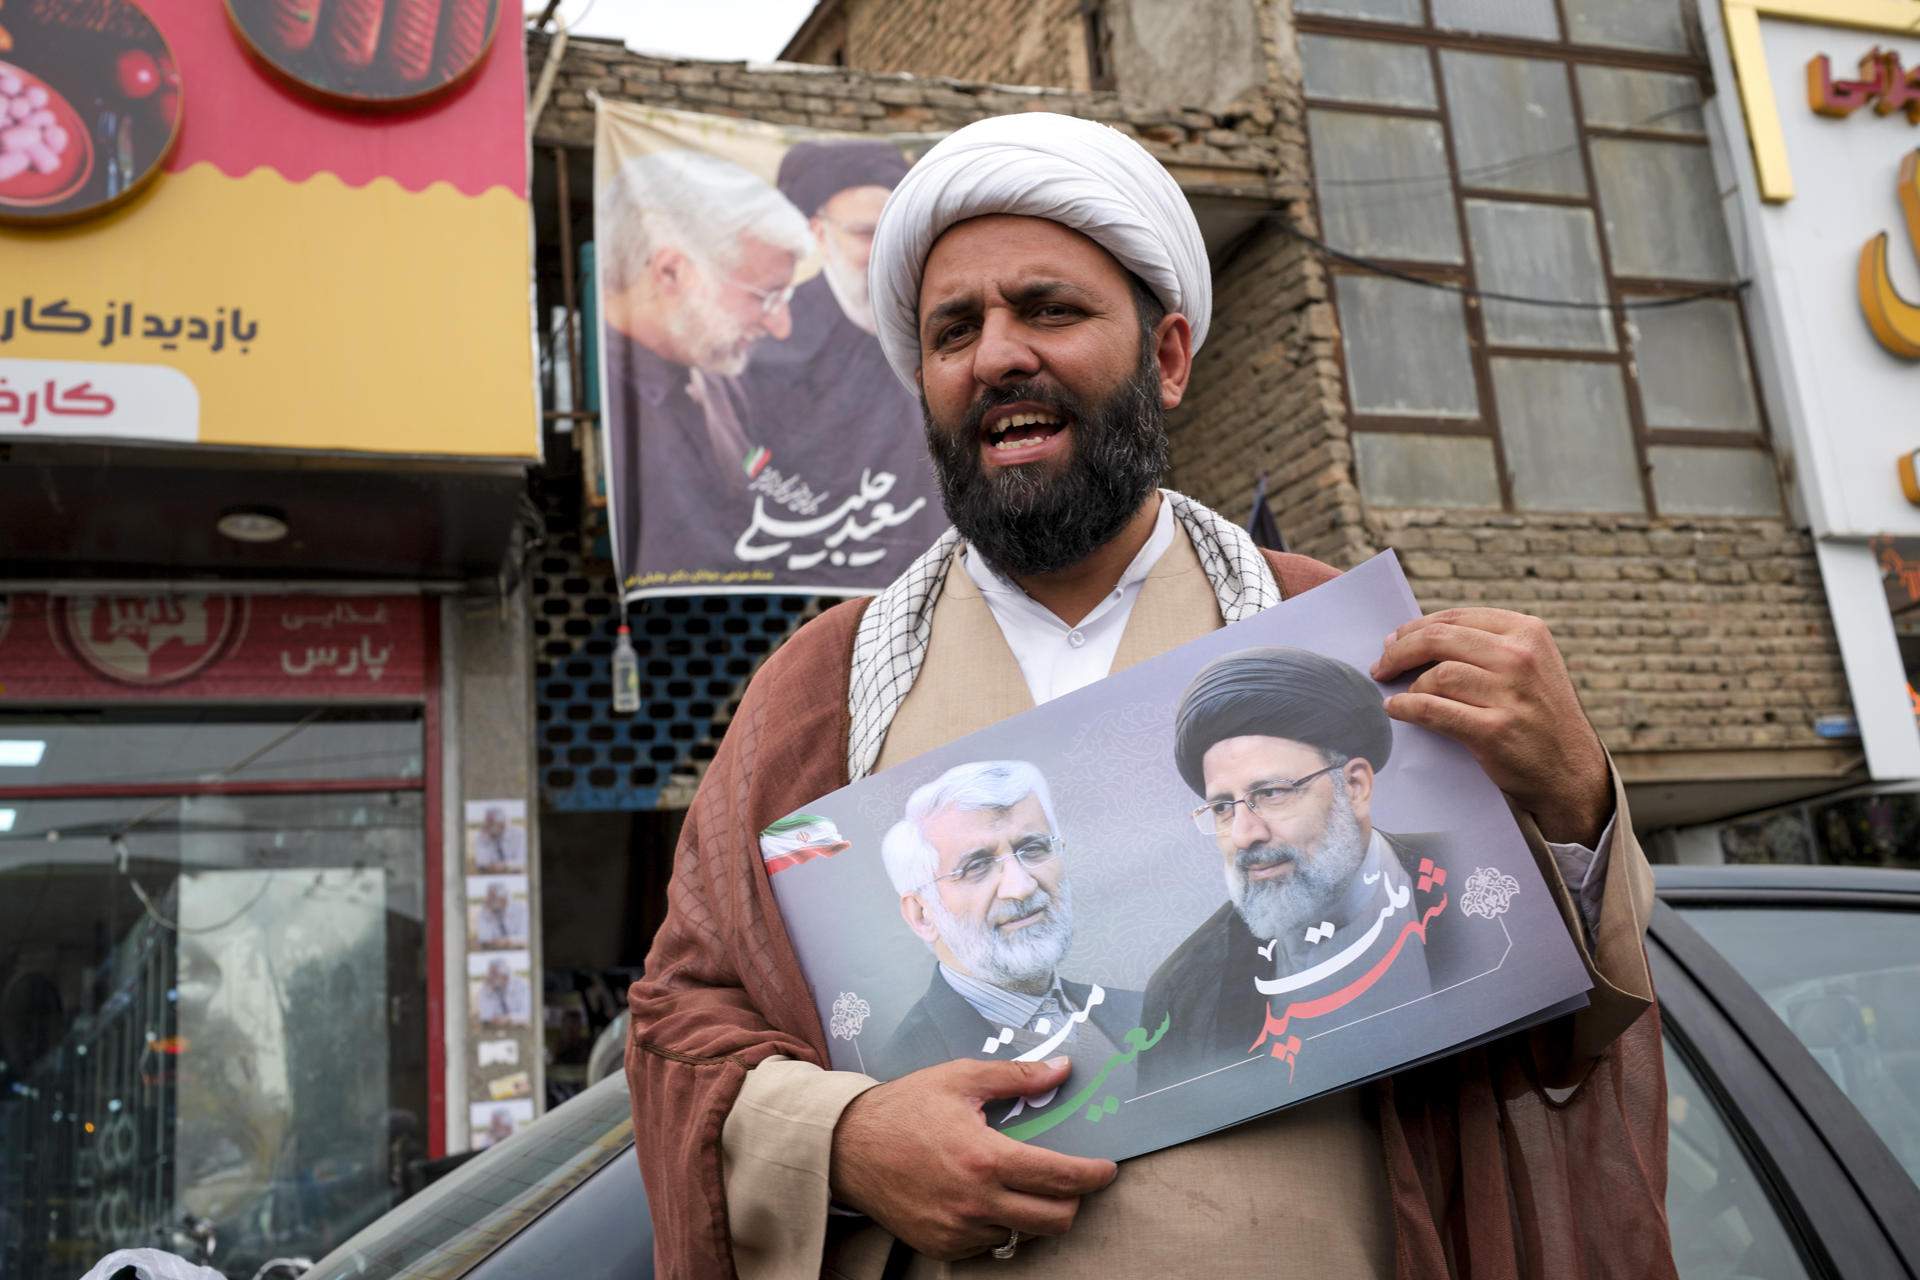 Eleccions presidencials a l'Iran: a la recerca del successor de Raisi